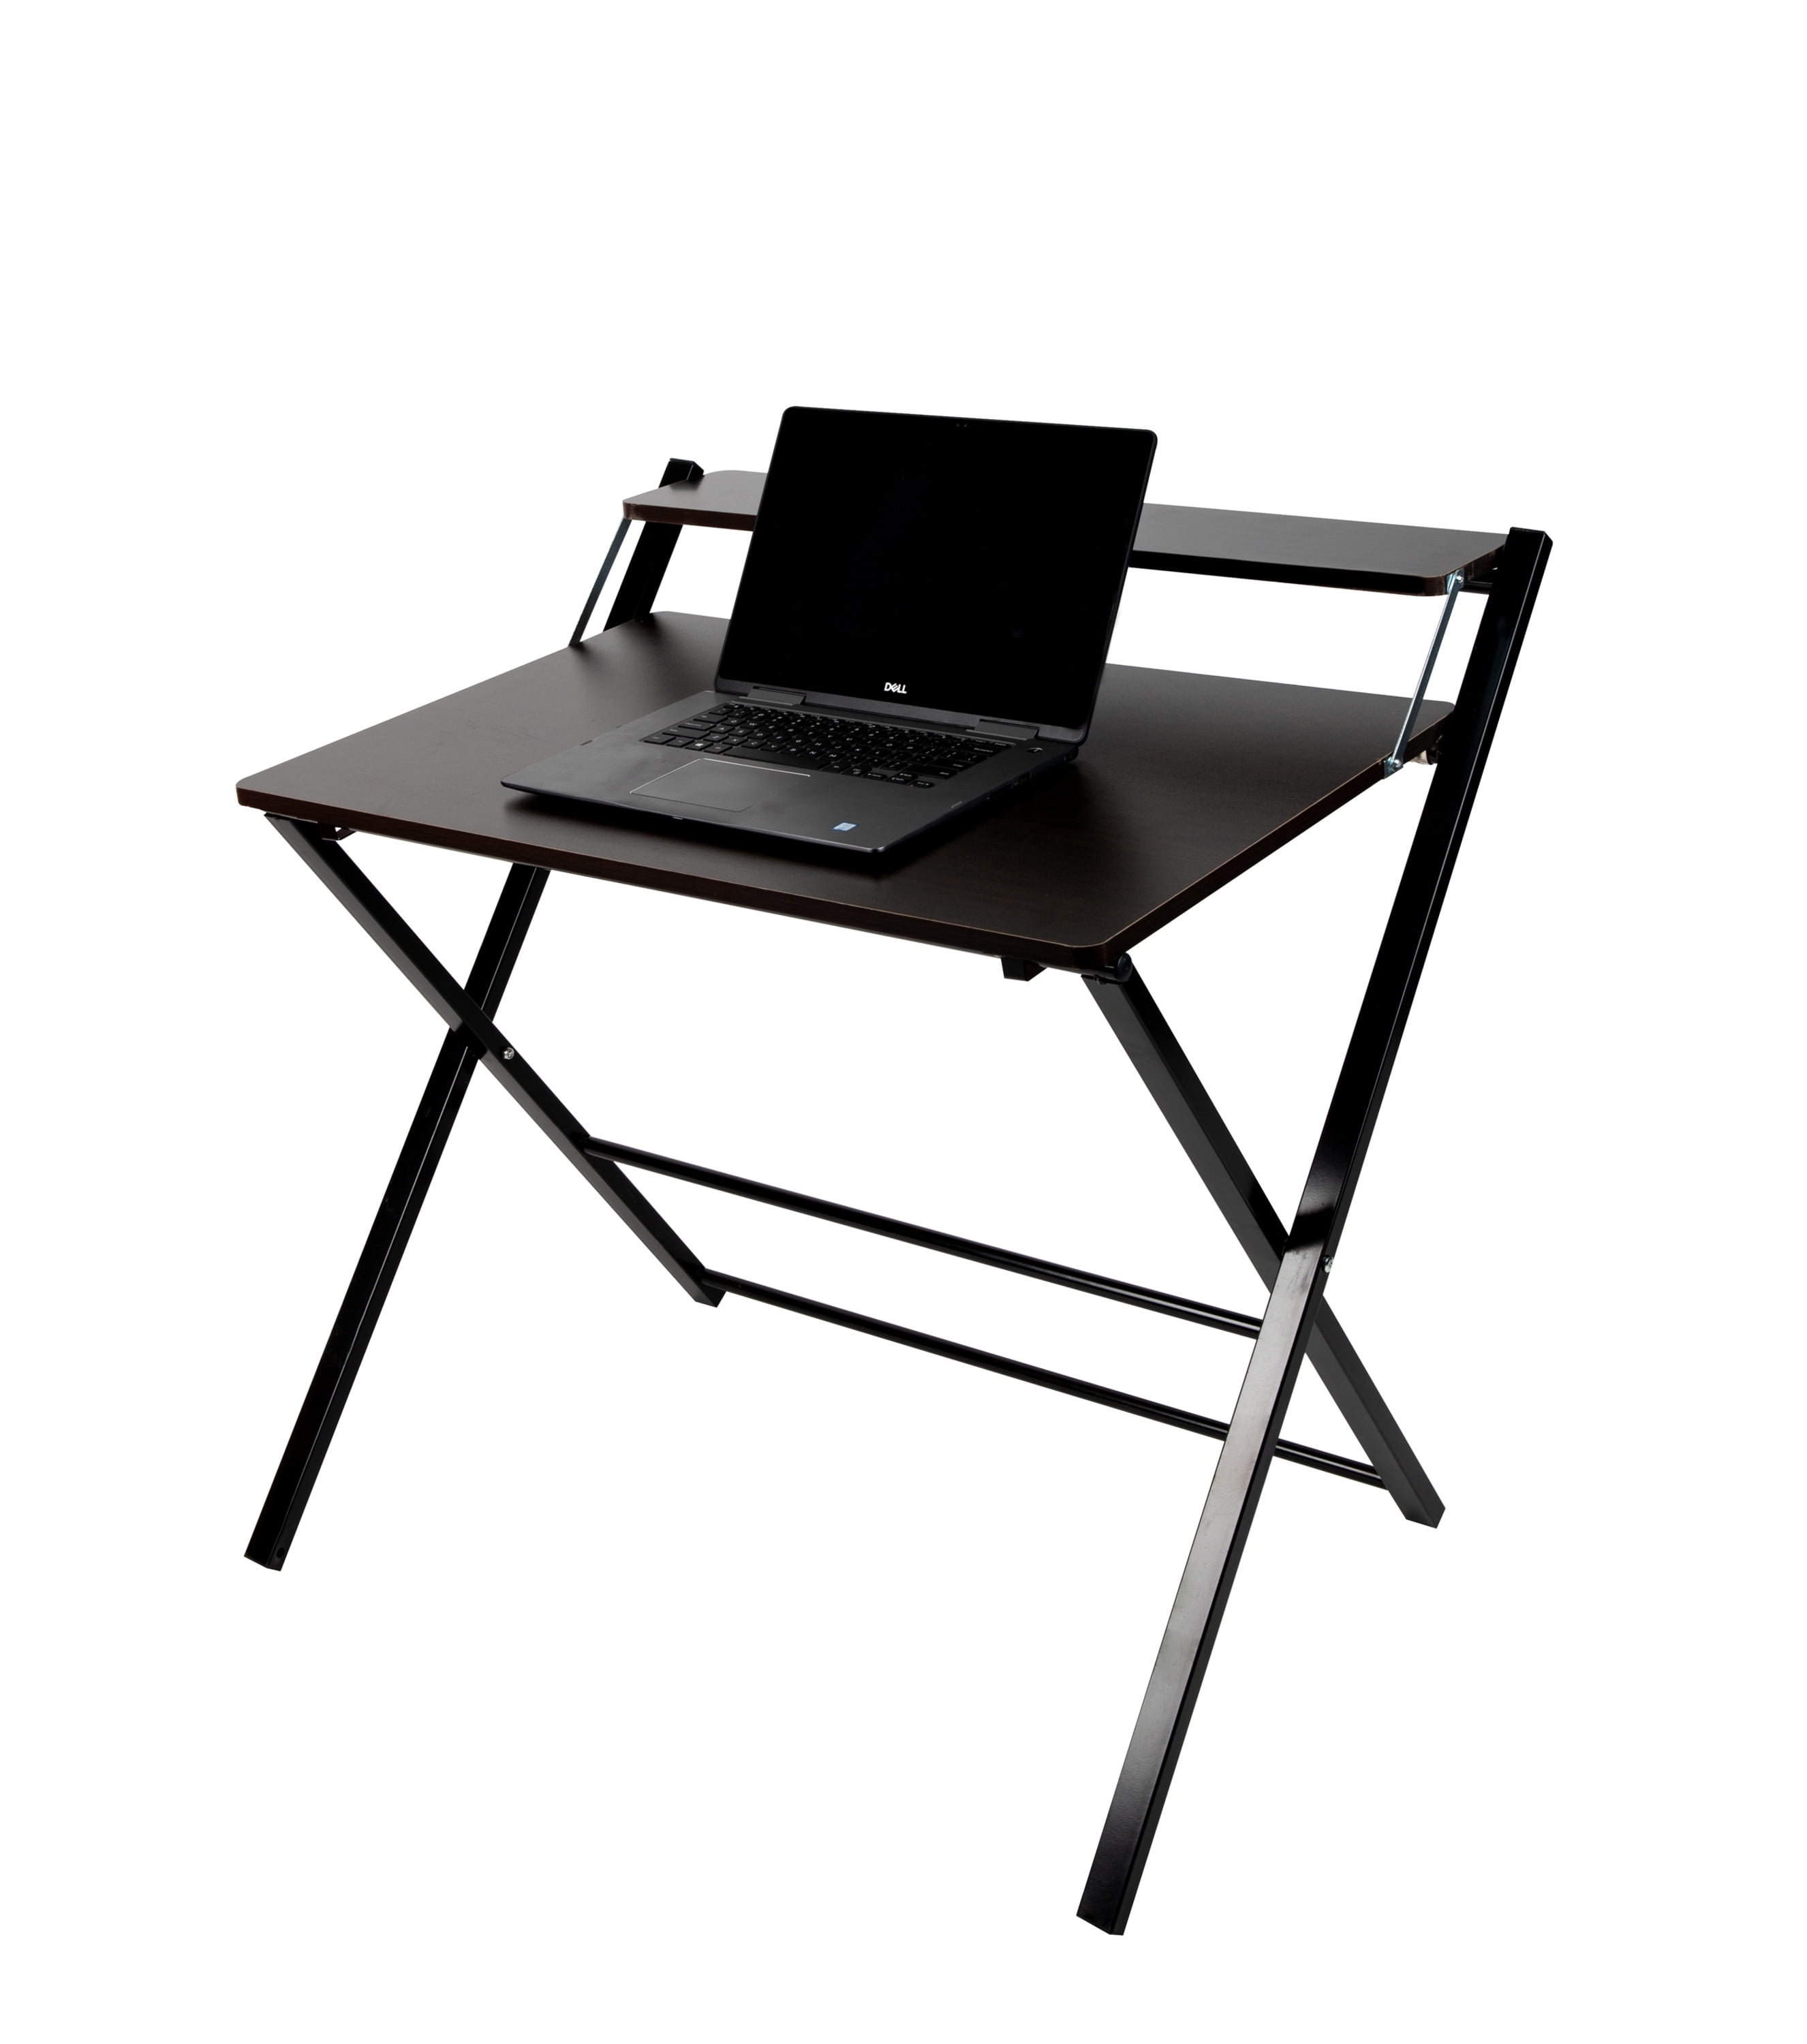 2-Tier Folding Computer Desk Home Office Furniture Workstation Table Laptop Desk 